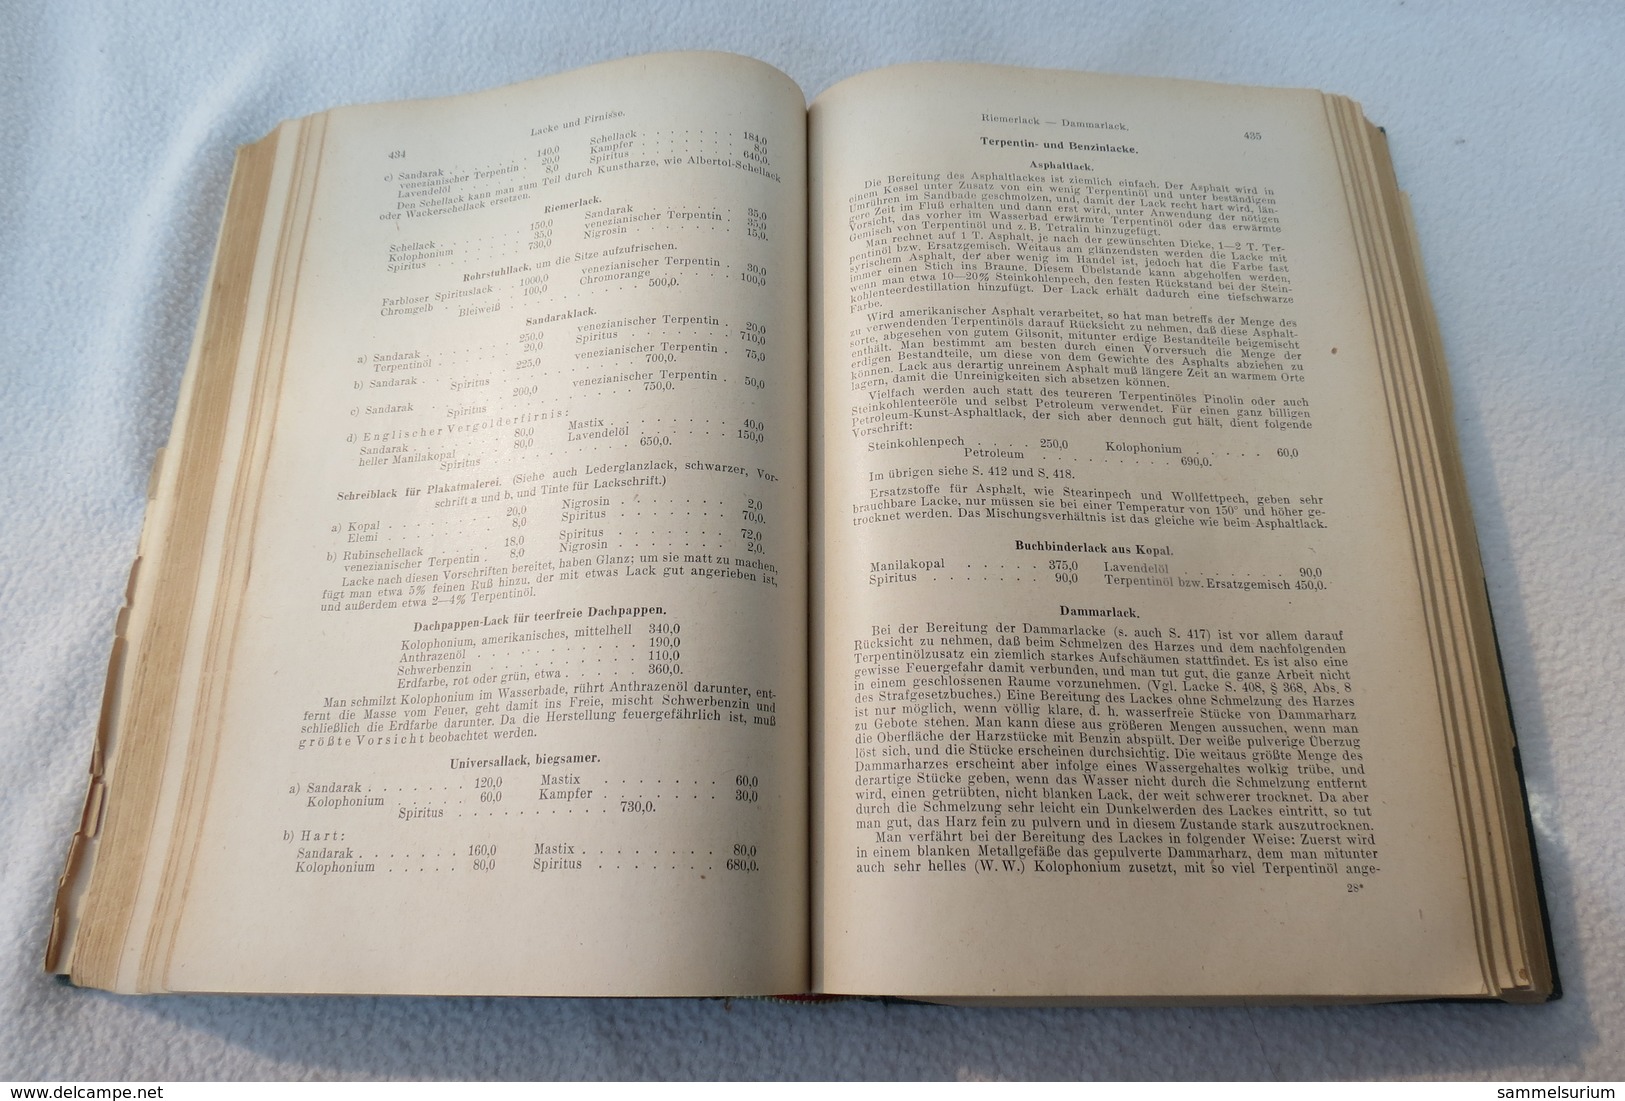 Buchheister/Ottersbach "Vorschriftenbuch für Drogisten" Herstellung der gebräuchlichen Verkaufsartikel von 1949